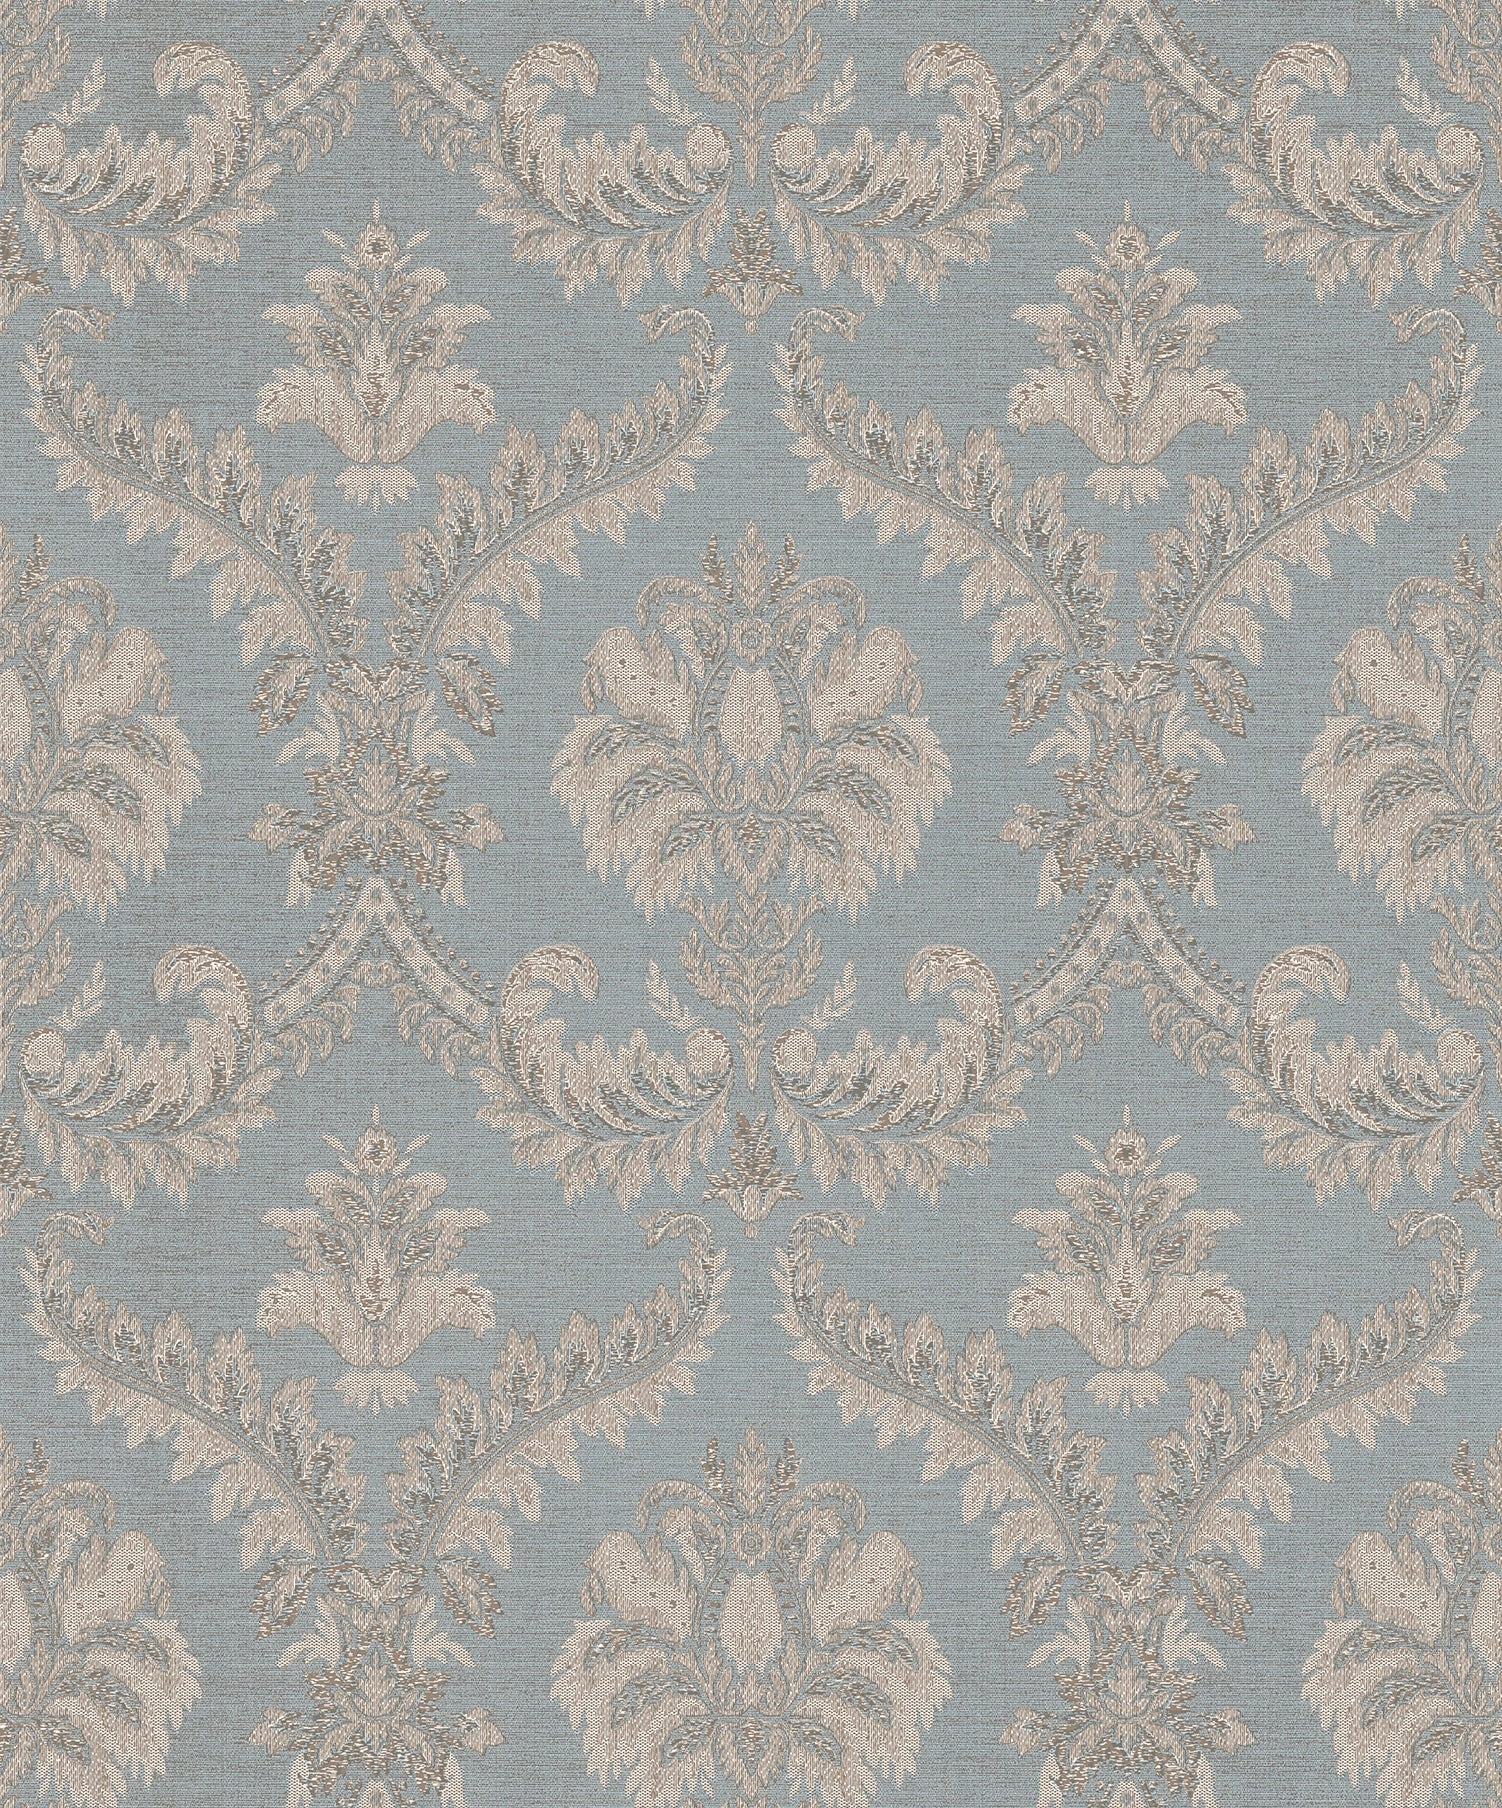 Szürkéskék textilhatású barokk mintás olasz design tapéta